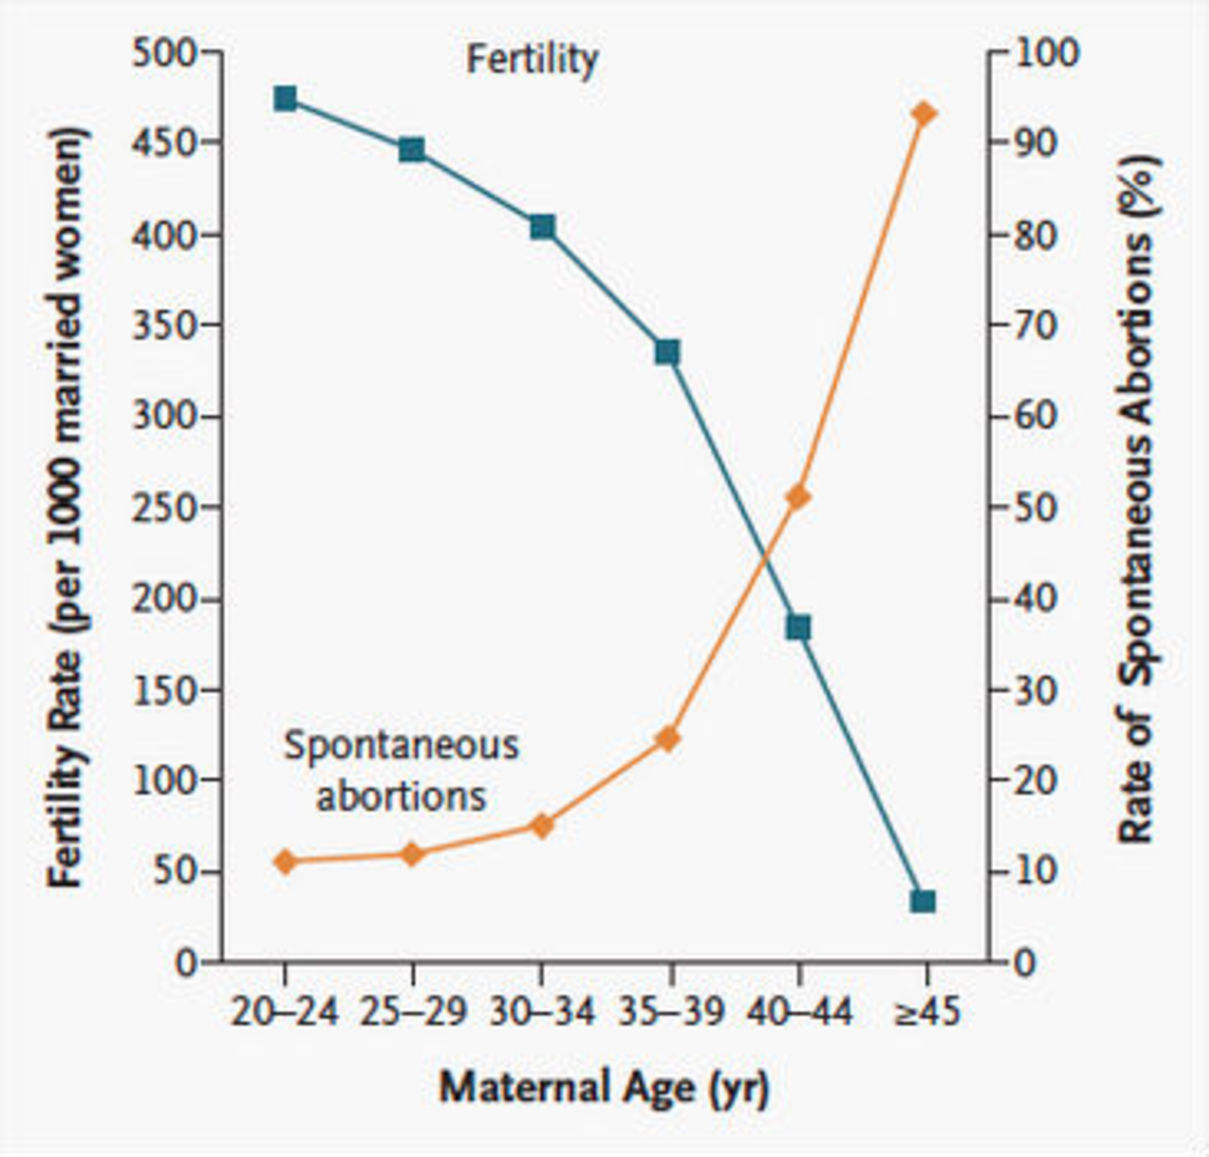 Tabella di fertilità per età - quando avere più figli